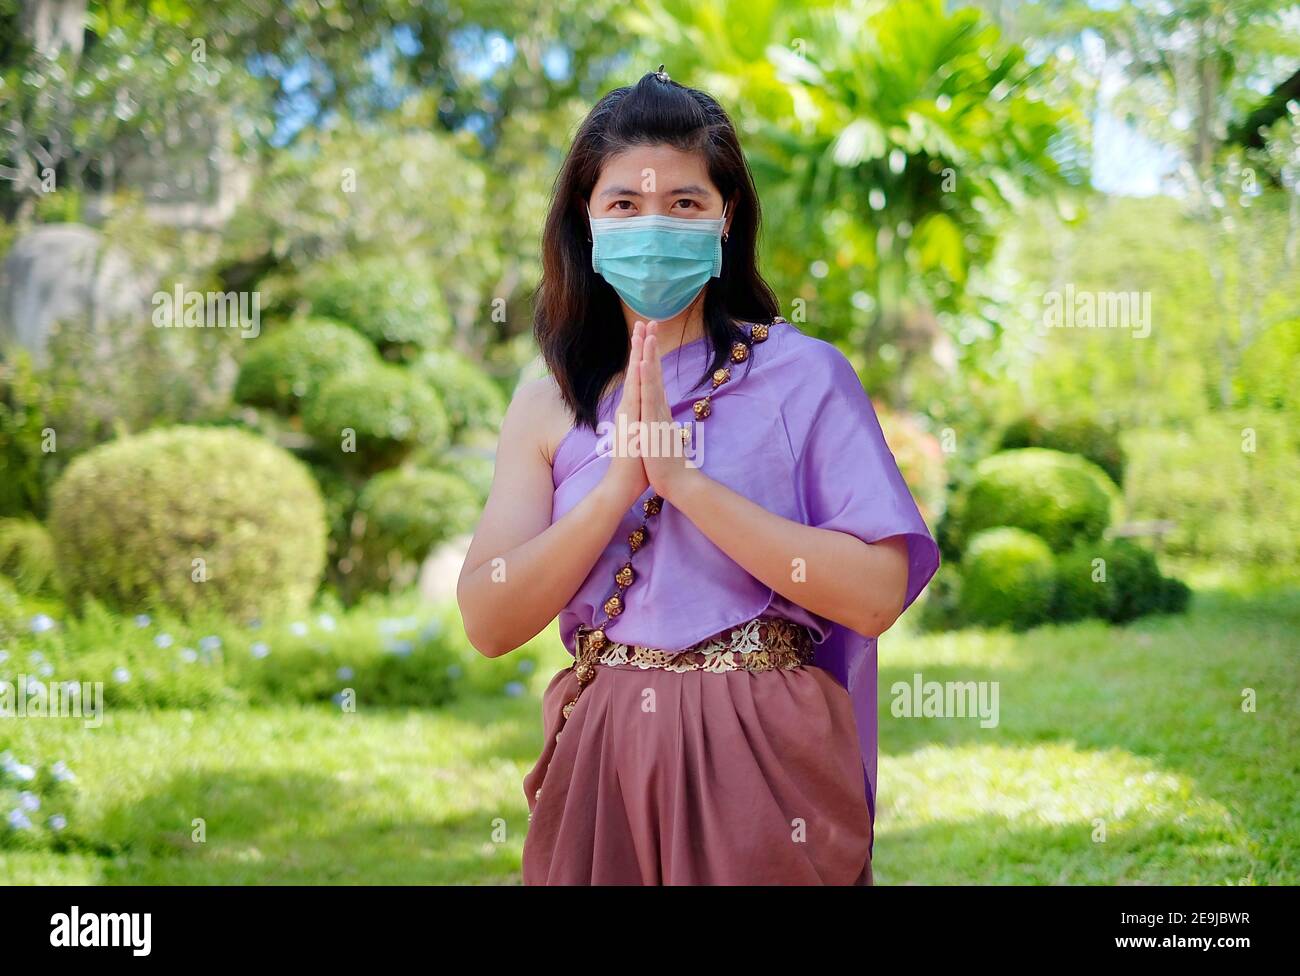 Une femme thaïlandaise en costume thaïlandais traditionnel, portant un masque chirurgical, montre un appel de salutation thaï "Wai" en mettant ses mains ensemble, penché Banque D'Images